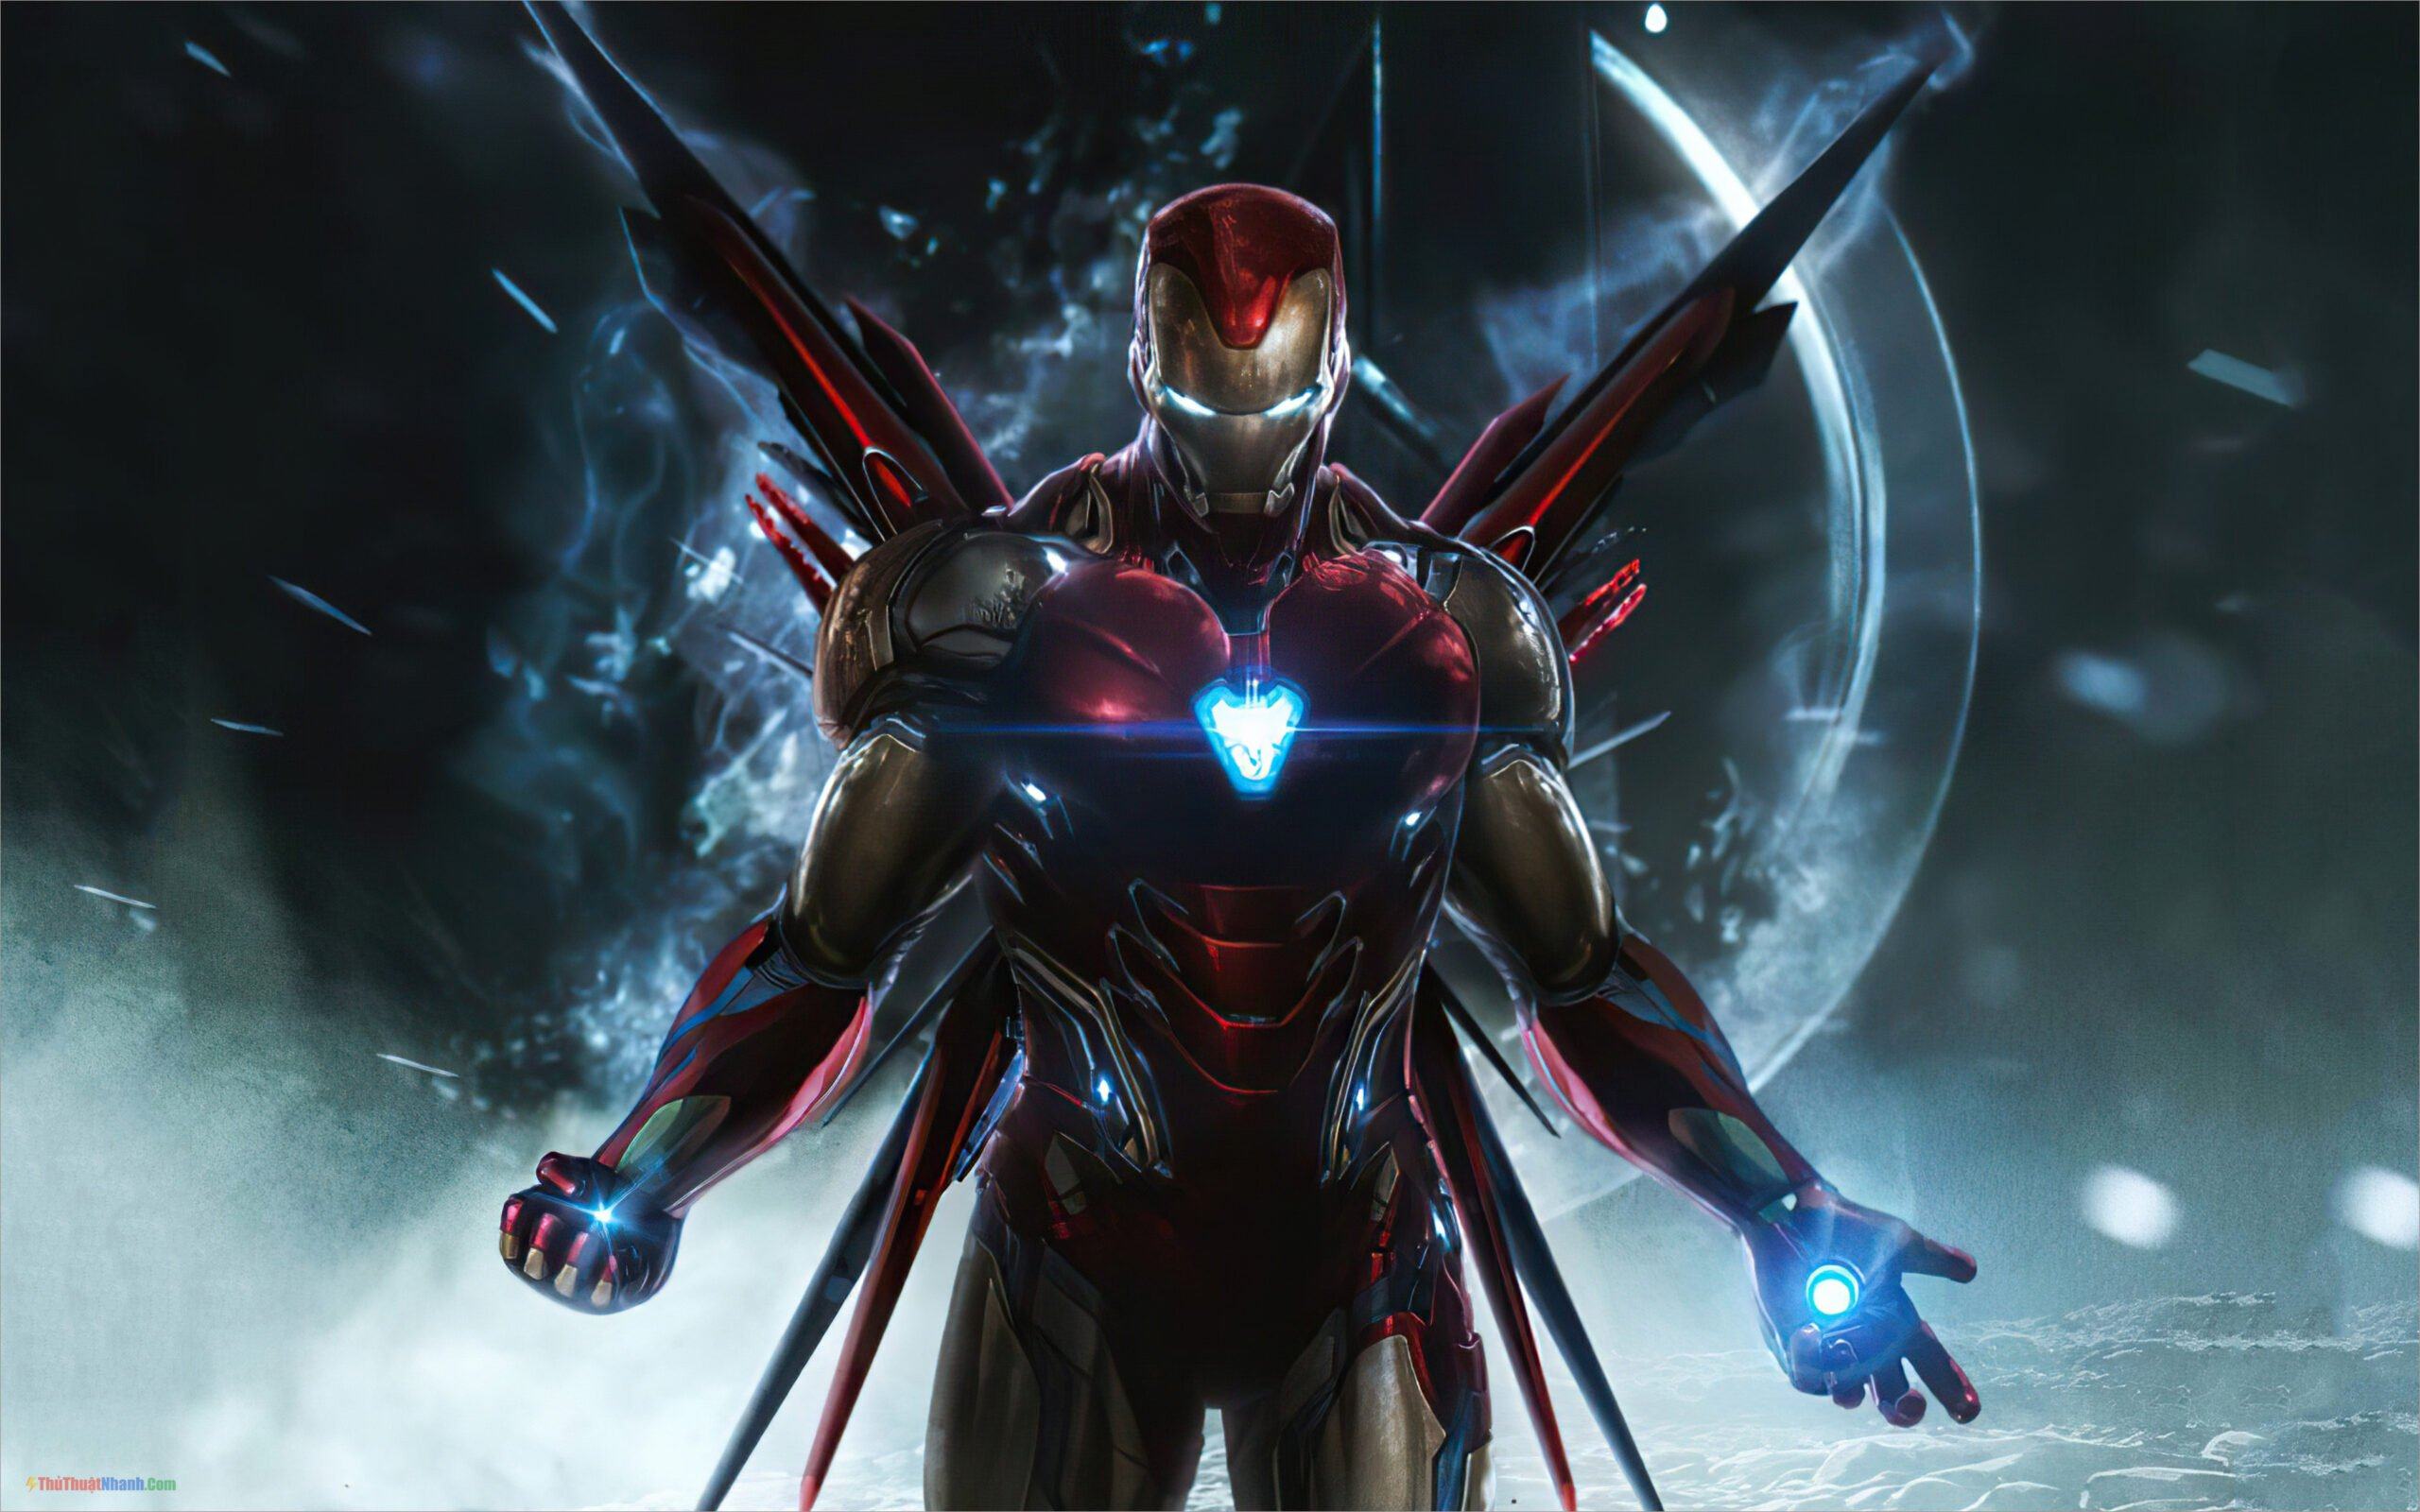 Iron Man In Avengers Endgame 4K Ultra HD Mobile Wallpaper  Iron man hd  wallpaper Iron man wallpaper Iron man avengers